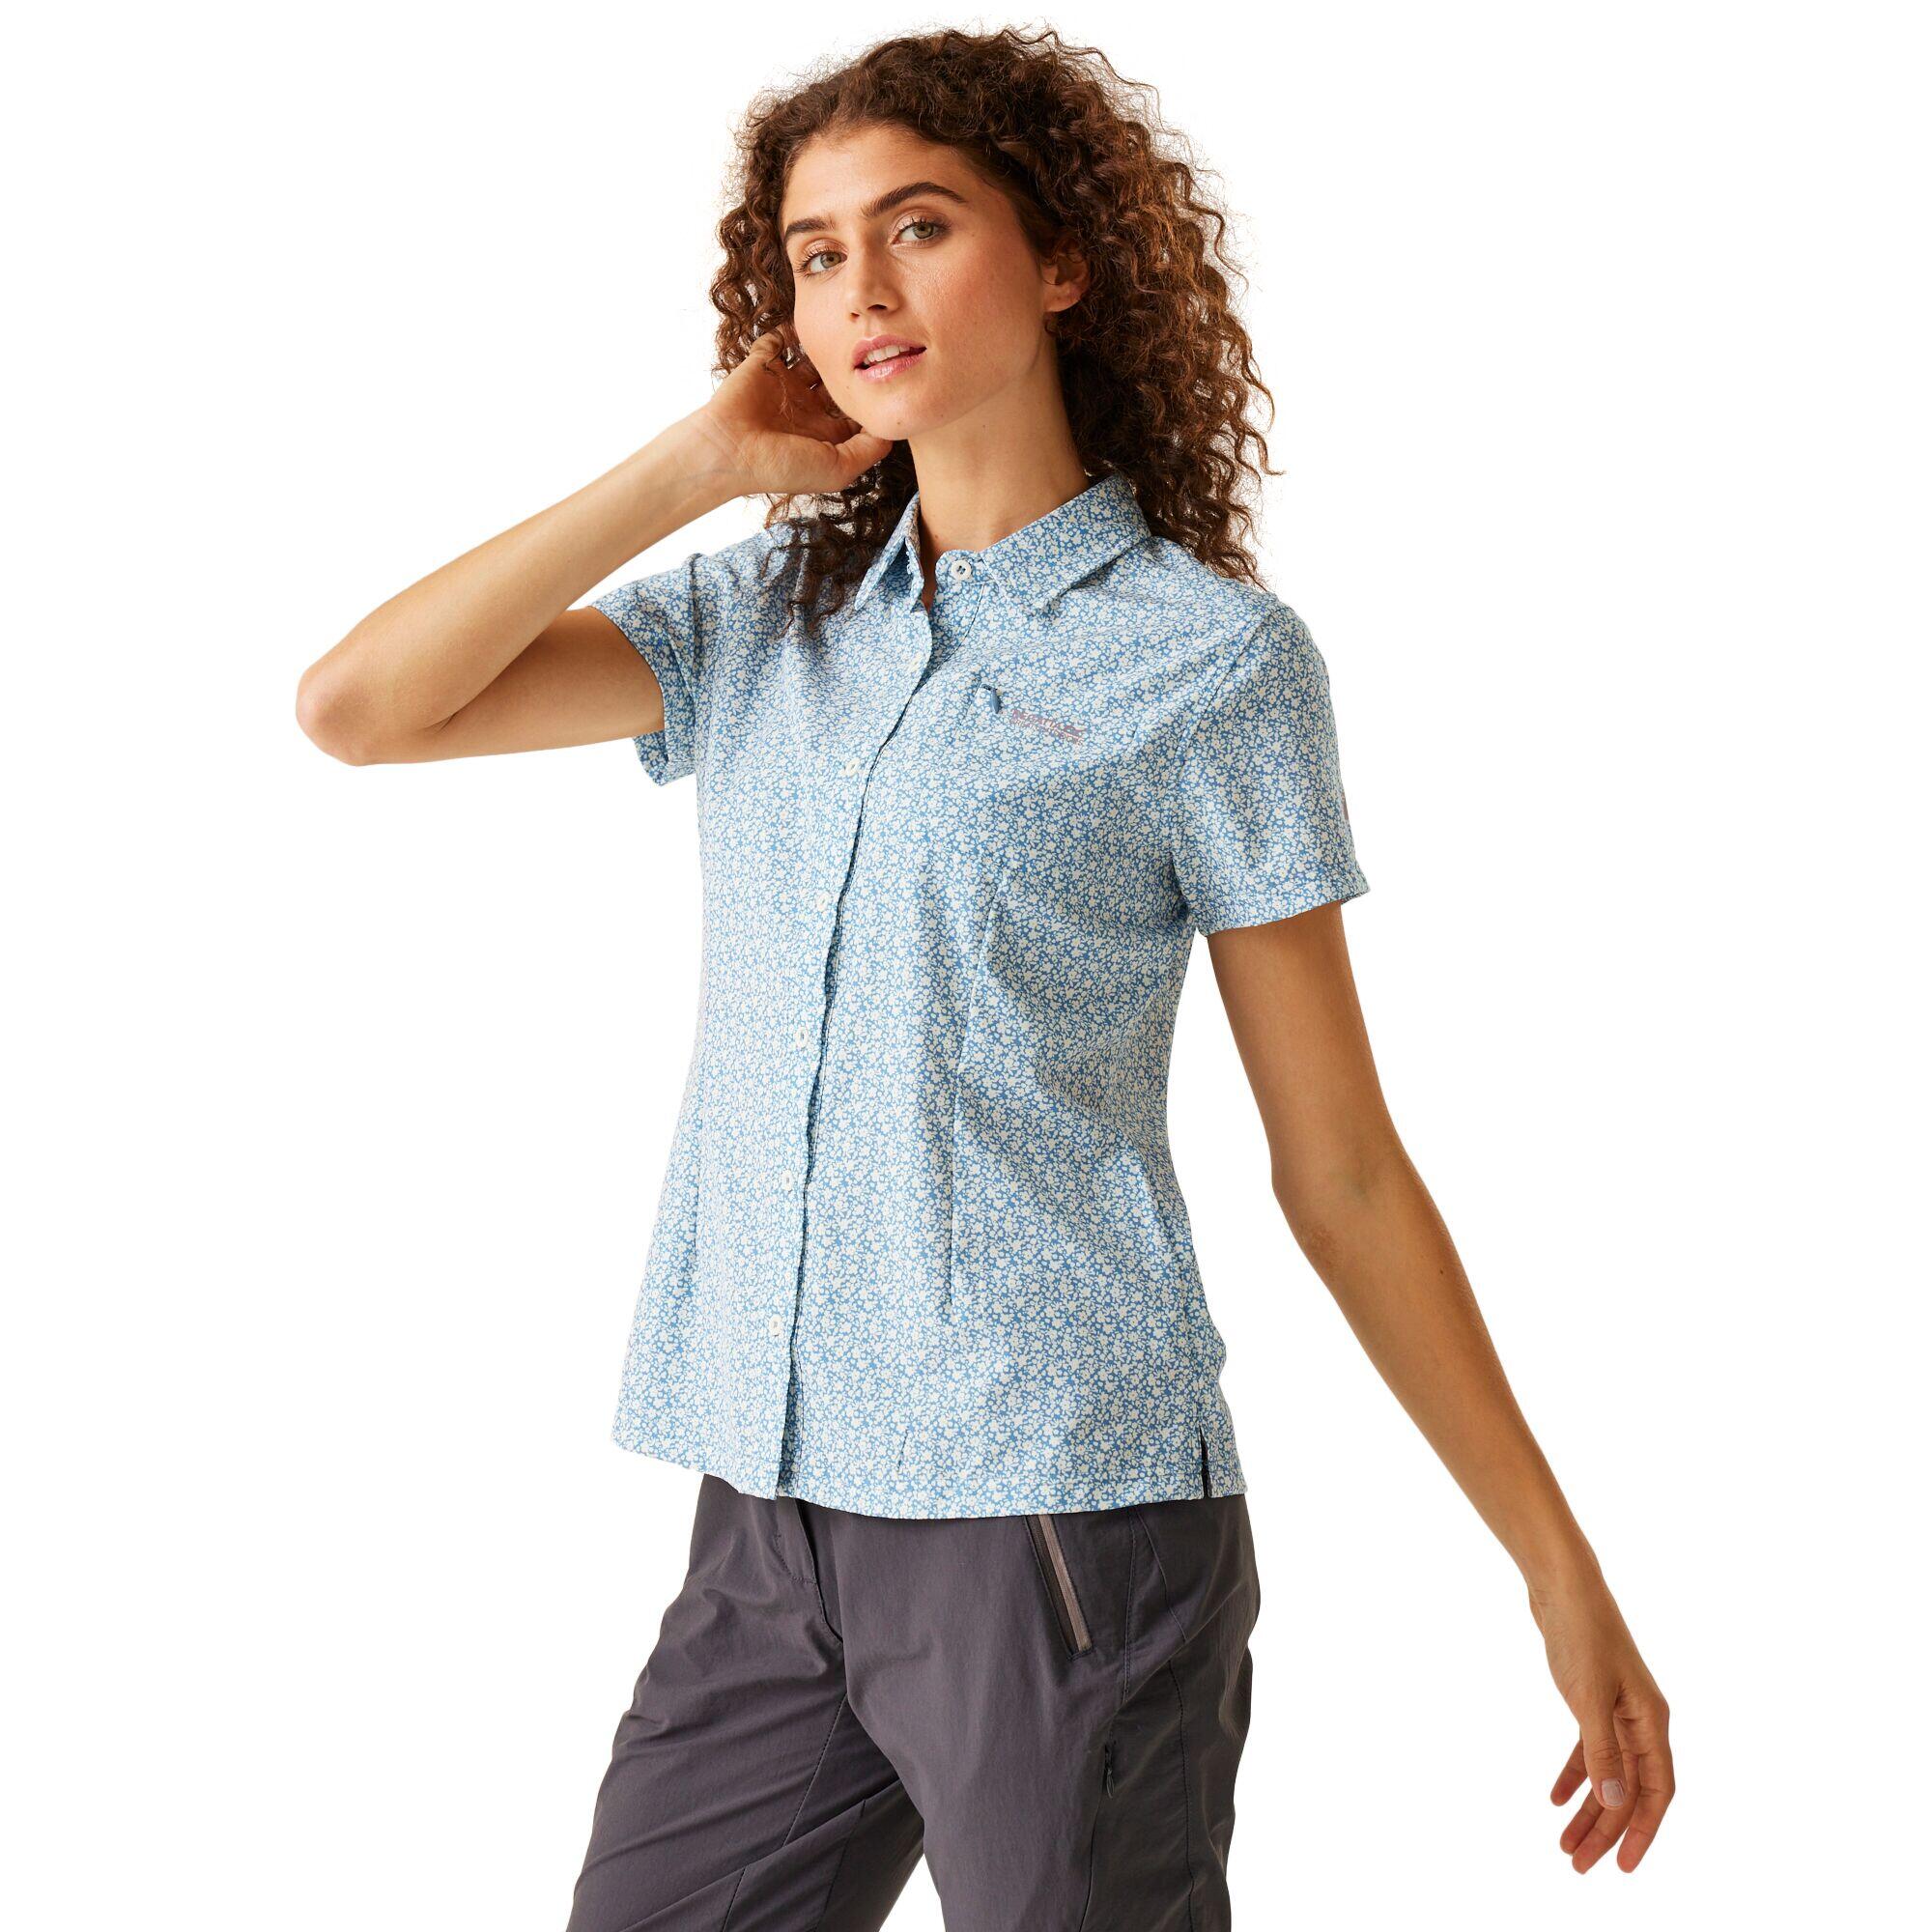 REGATTA Women's Travel Packaway Short Sleeve Shirt